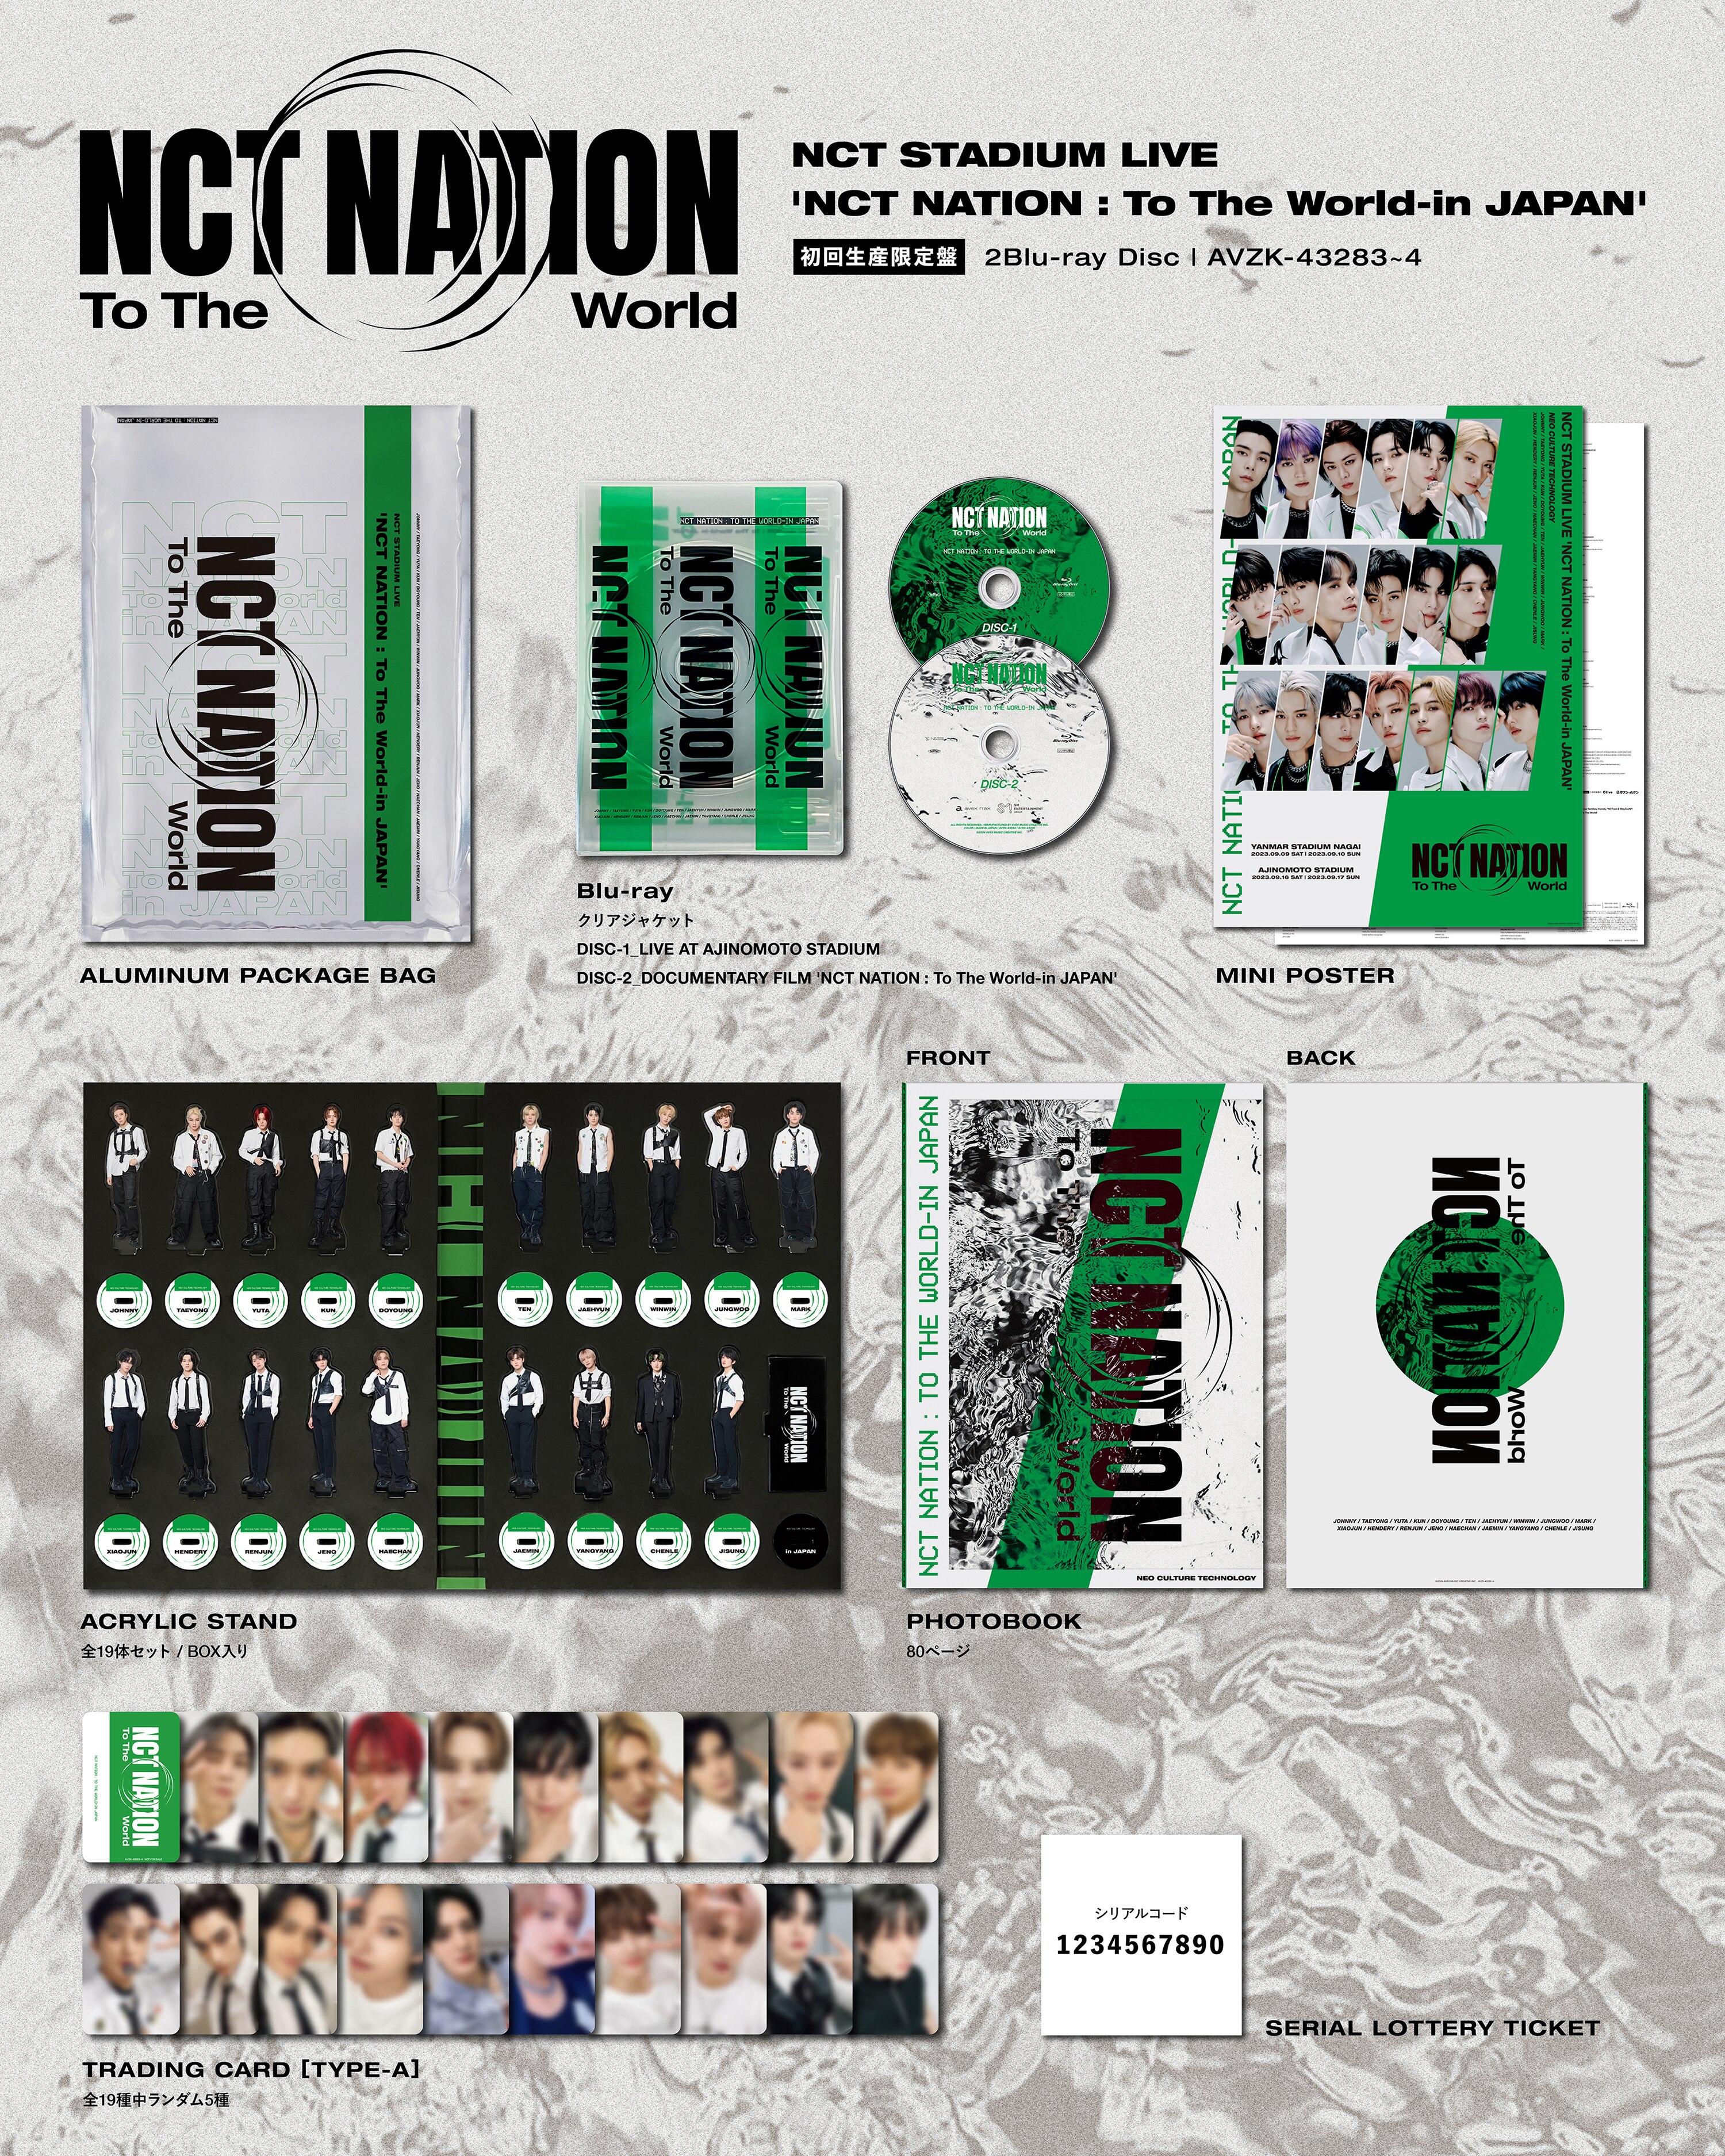 最低価格の NCT NATION DVD 初回限定盤 アクスタセット&mu-mo特典